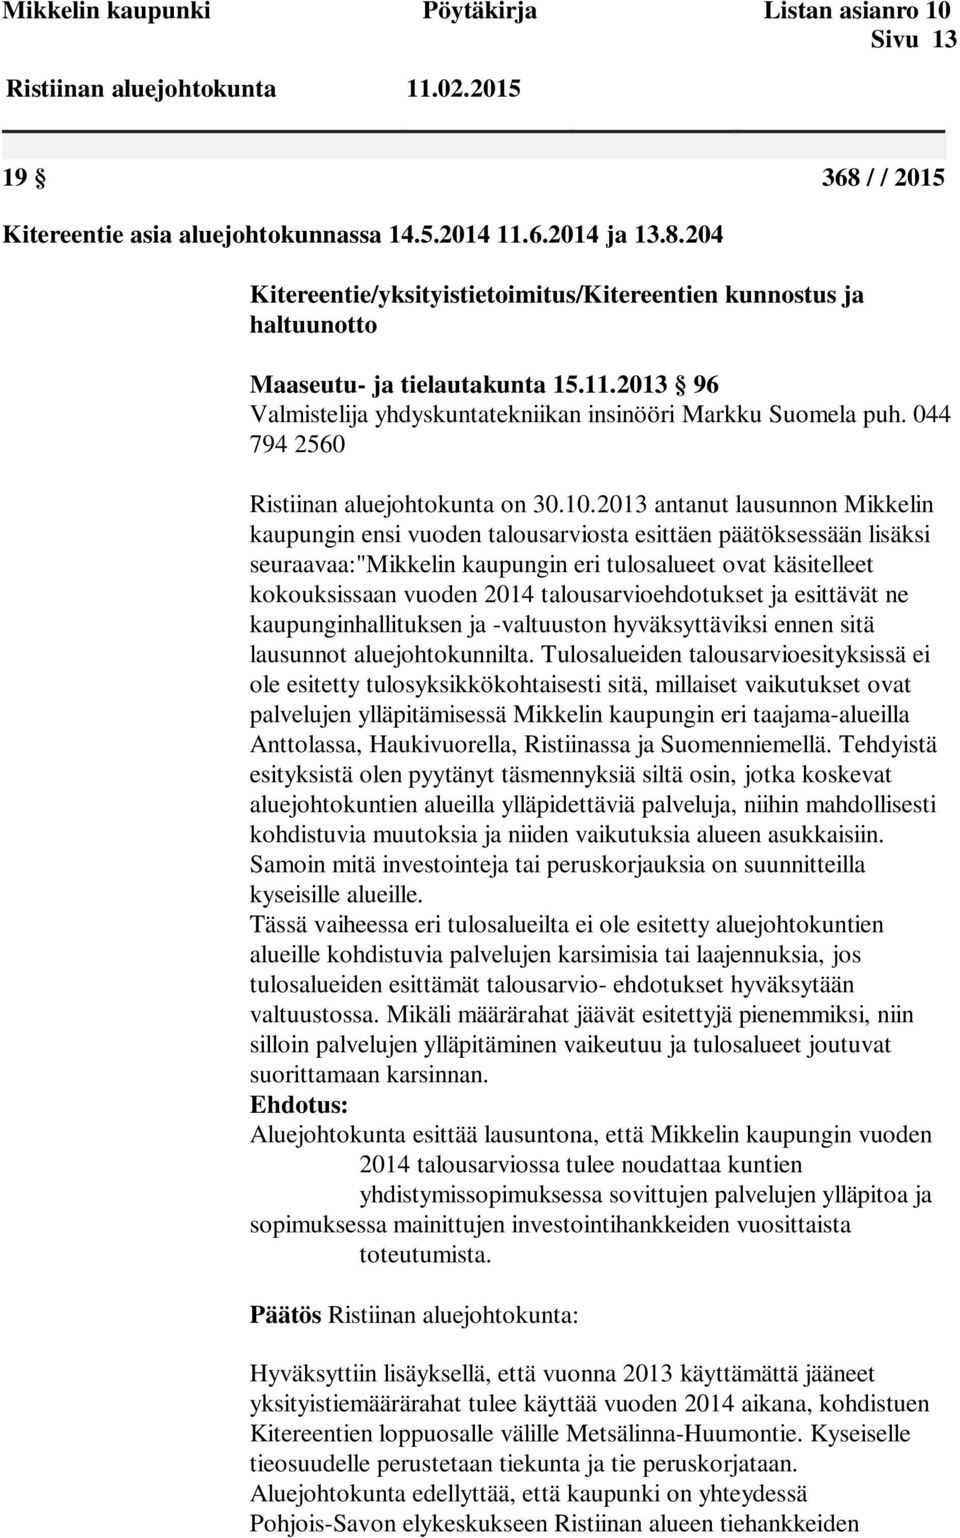 2013 antanut lausunnon Mikkelin kaupungin ensi vuoden talousarviosta esittäen päätöksessään lisäksi seuraavaa:"mikkelin kaupungin eri tulosalueet ovat käsitelleet kokouksissaan vuoden 2014